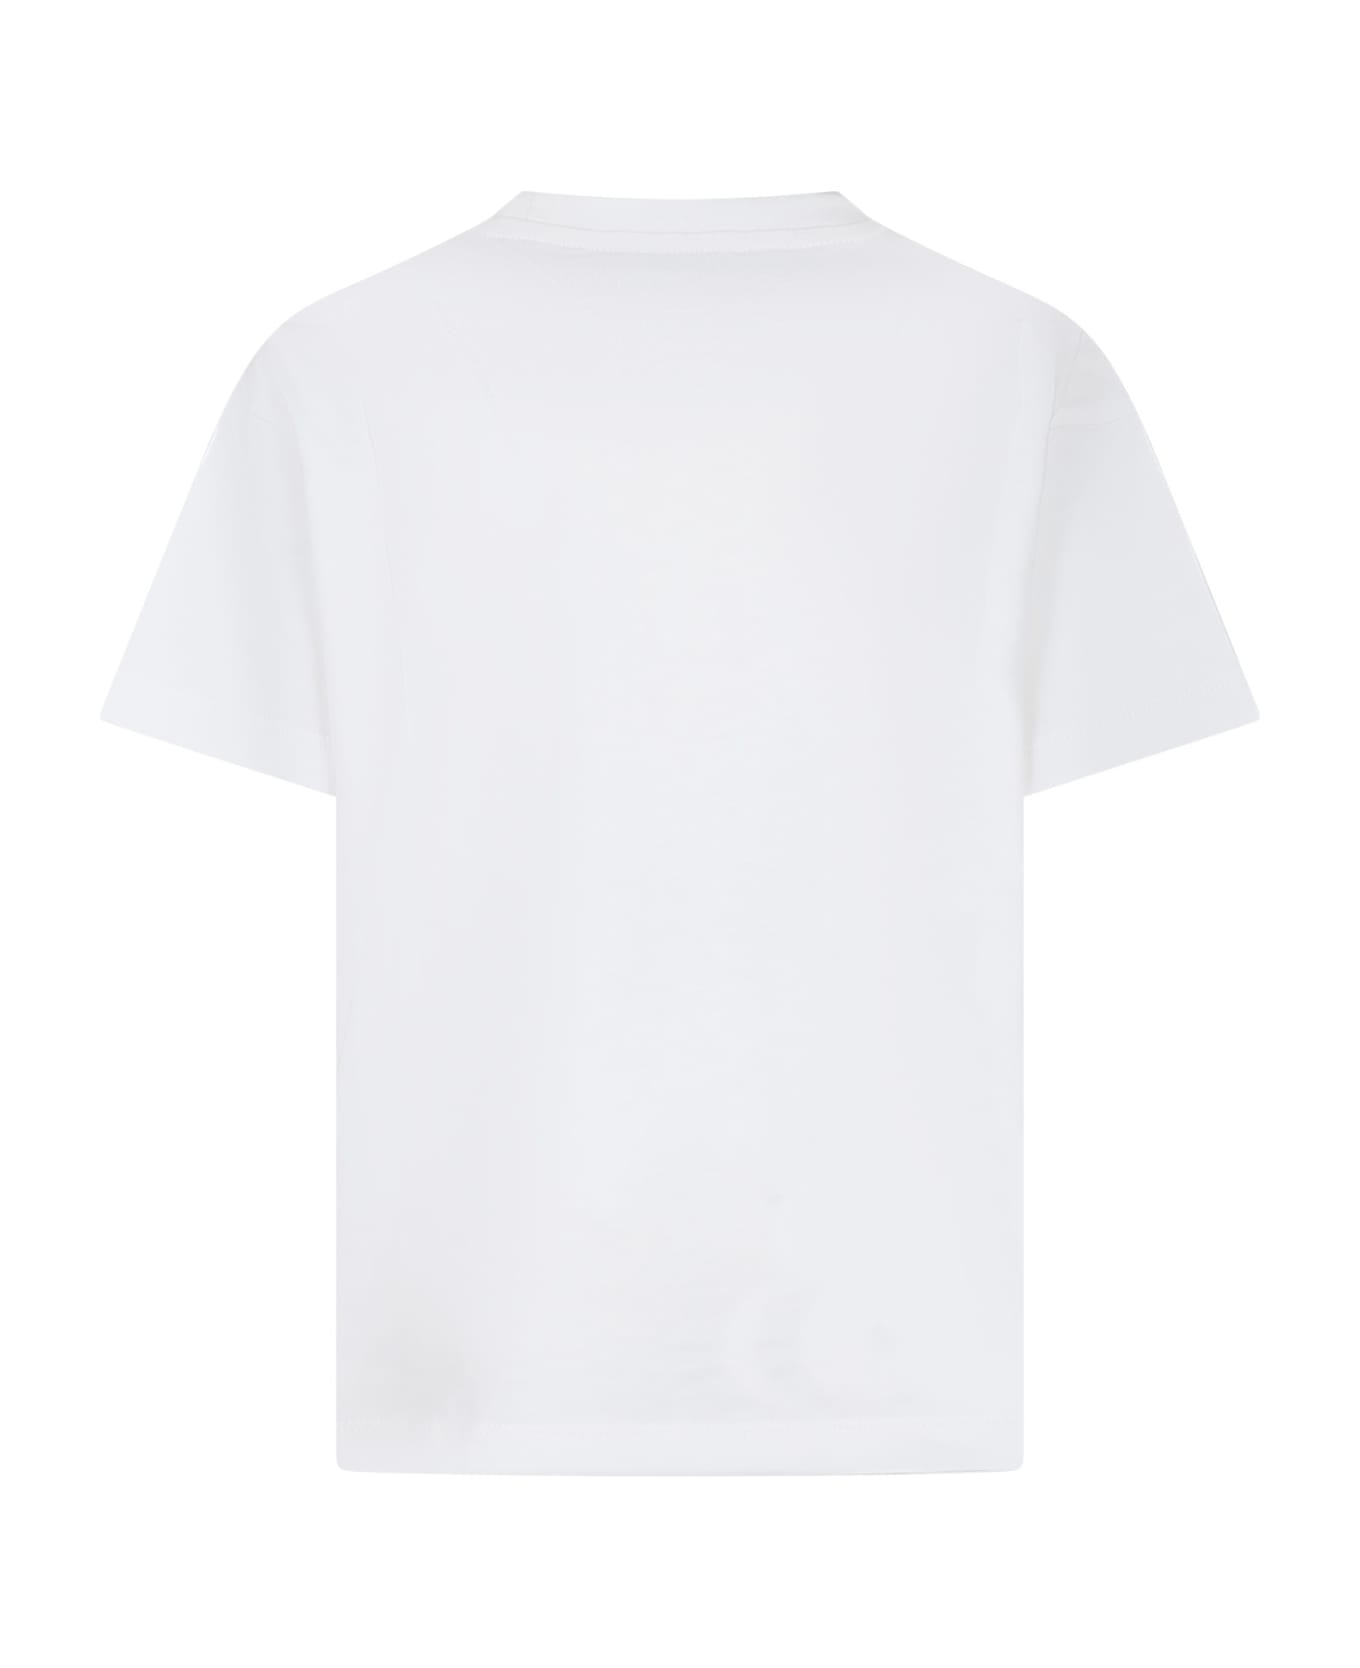 Etro White T-shirt For Kids With Iconic Pegasus - Az